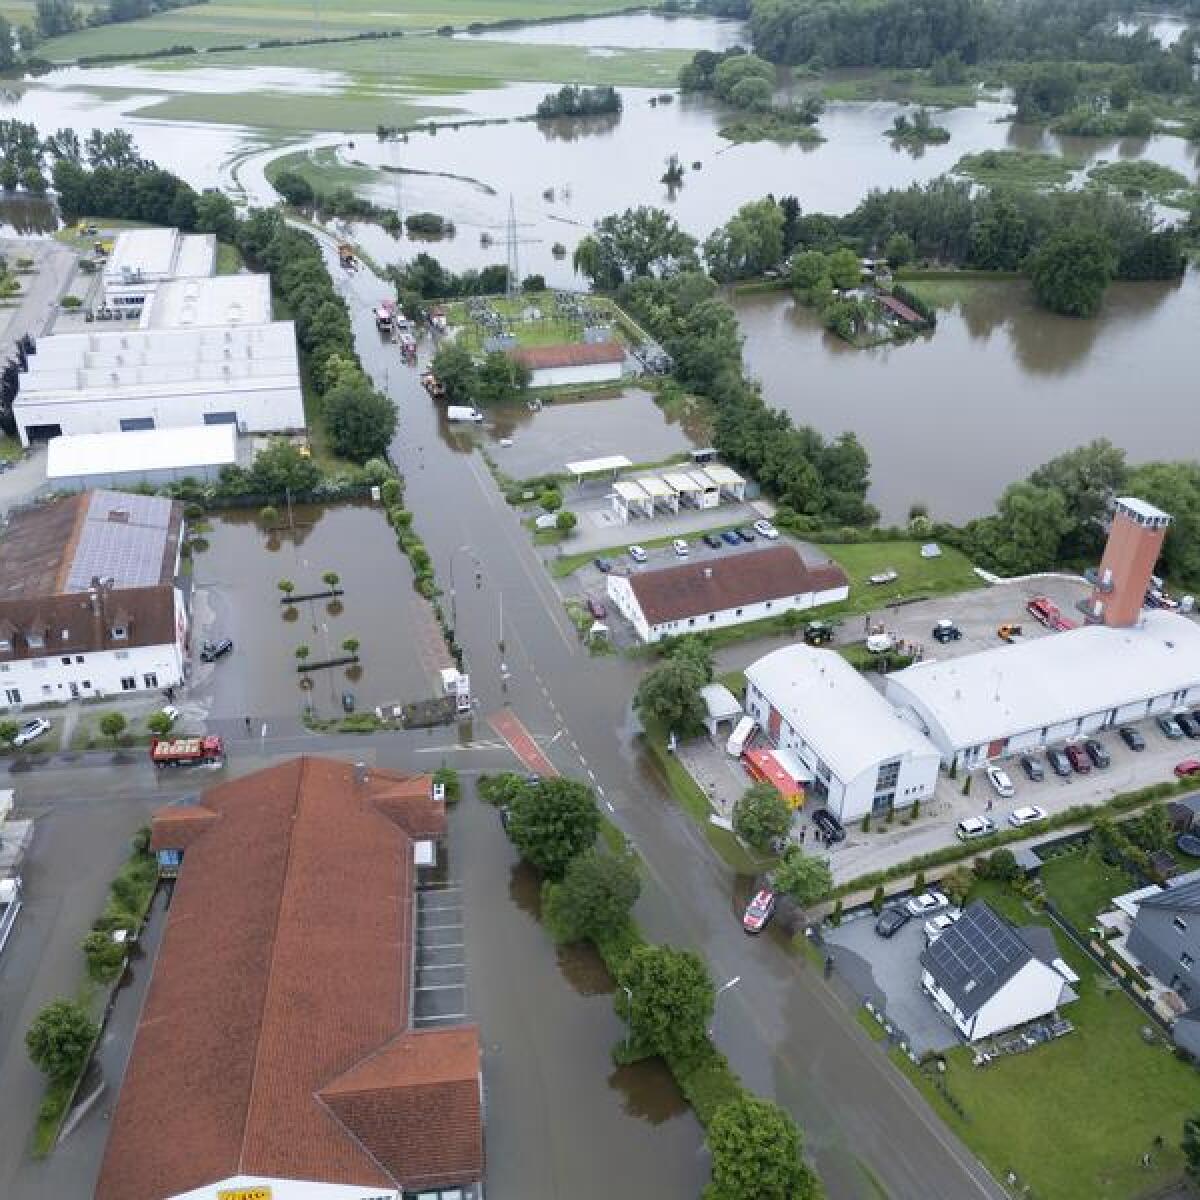 Flooding in Reichertshofen, Germany